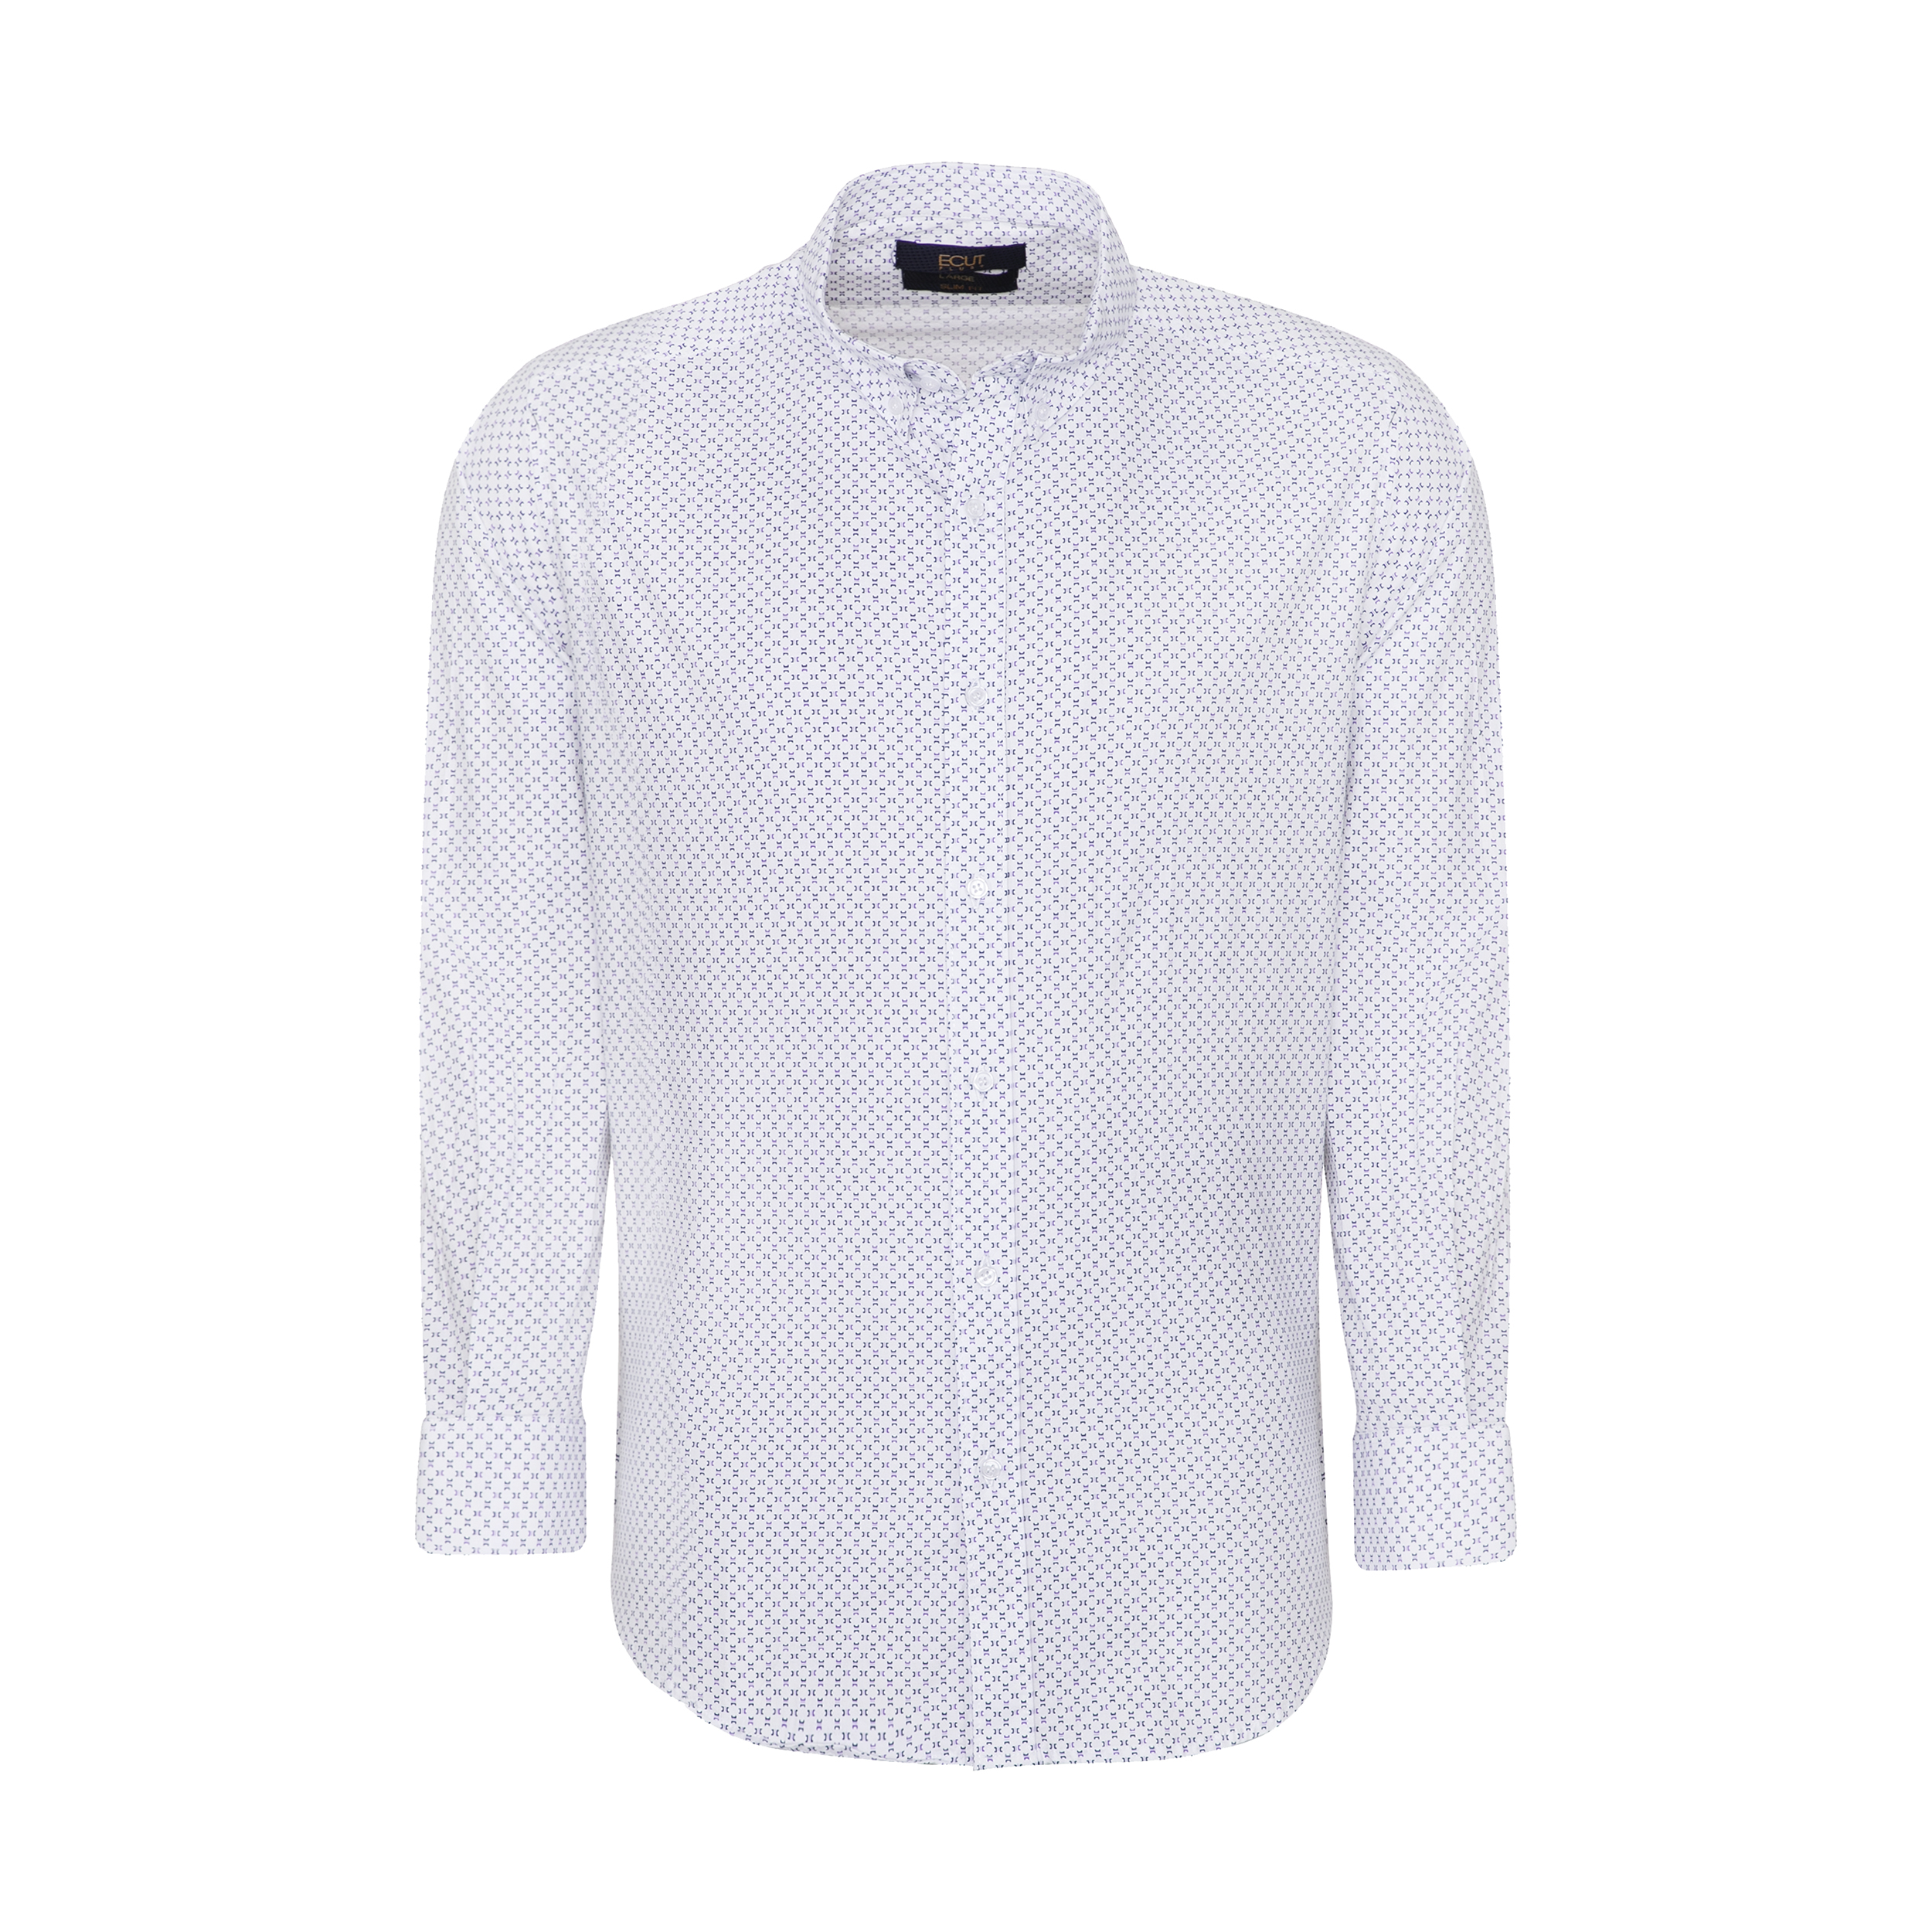 پیراهن آستین بلند مردانه ایکات مدل PST1152394 رنگ سفید